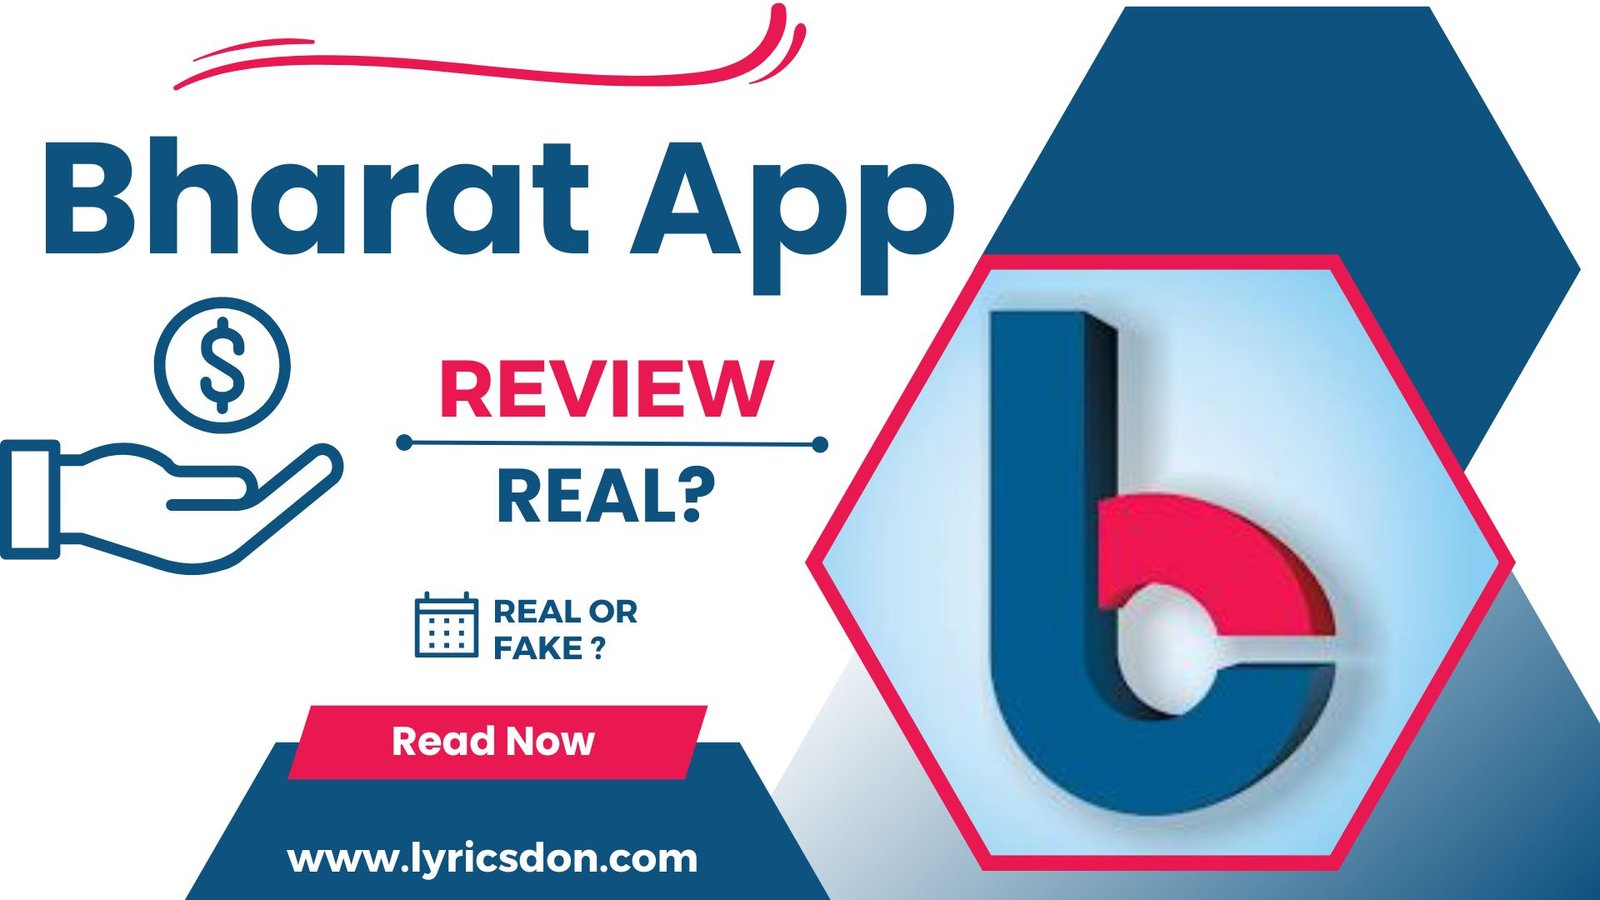 Bharat Loan App Review